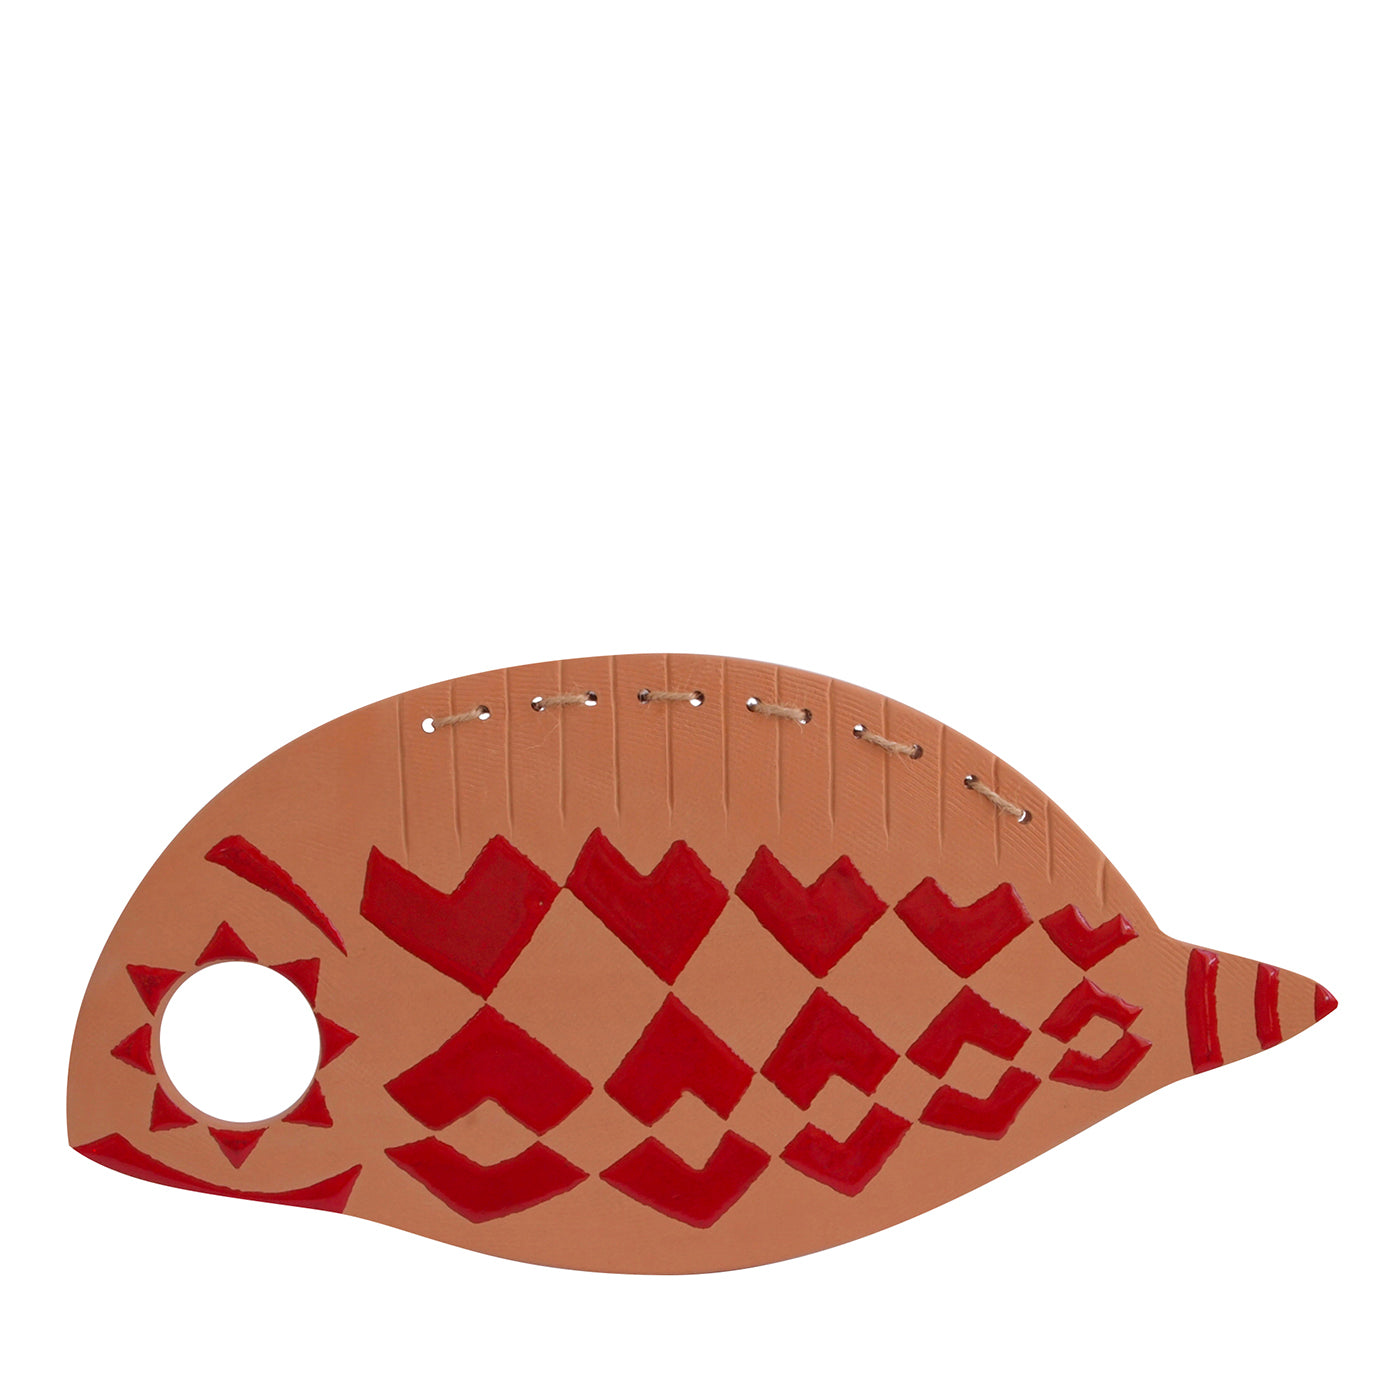 Fish-Like Red Terracotta  - Main view